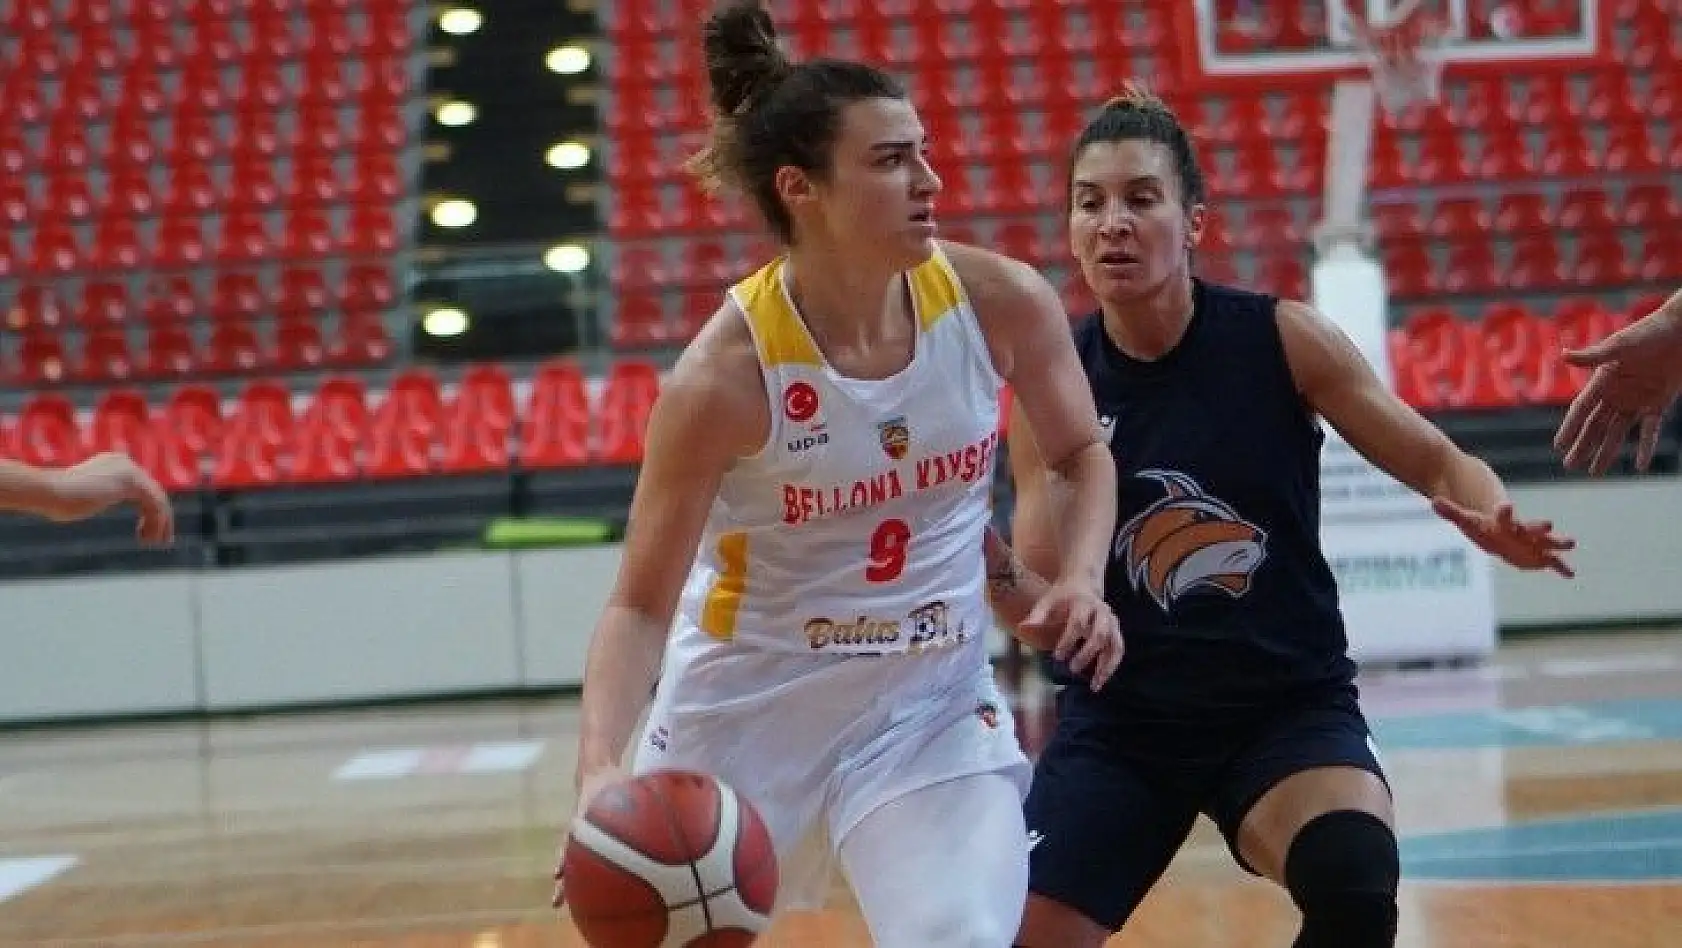 Bellona Kayseri Basketbol tek farkla kazandı: 67-66